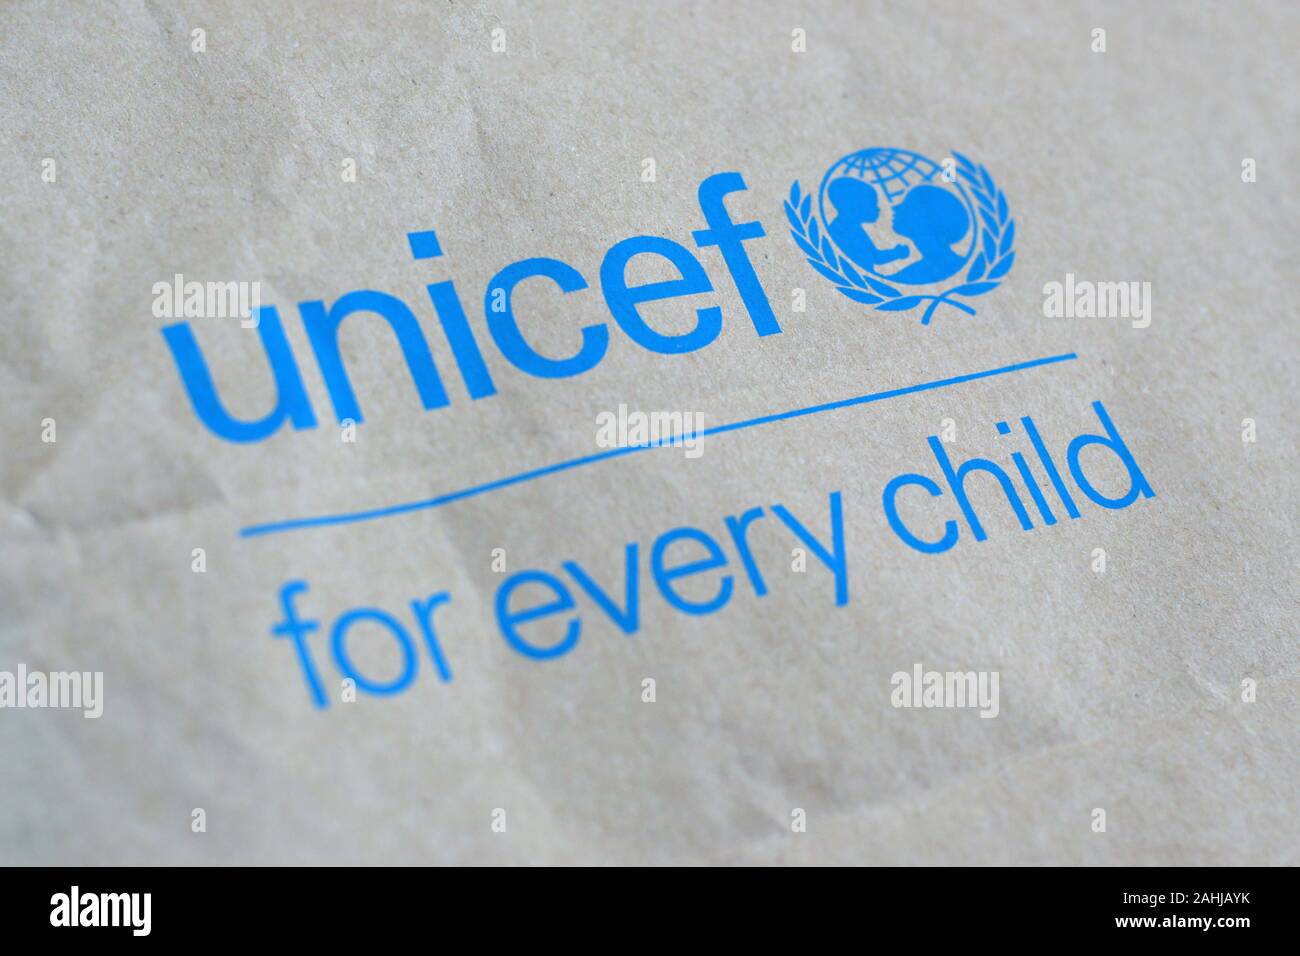 NY, USA - 29 décembre 2019 : l'Unicef logo bleu sur sac en papier brun, l'Organisation des Nations Unies pour l'enfance est chargé de fournir de l'aide humanitaire et d Banque D'Images